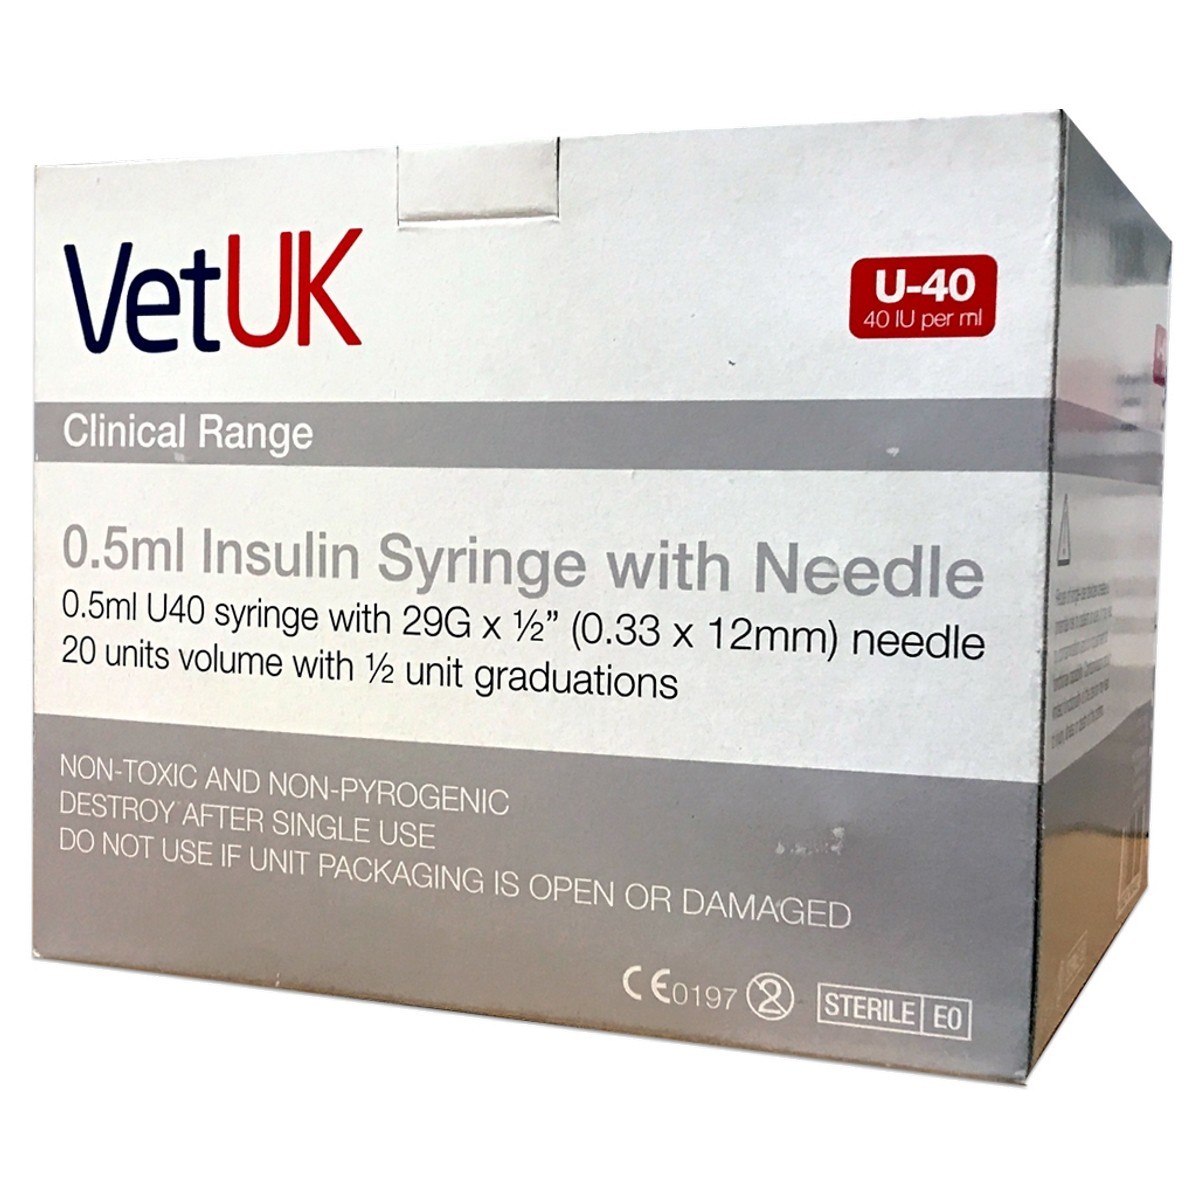 Vetuk 0 5ml U40 Insulin Syringe With Needle Box Of 100 From 11 24